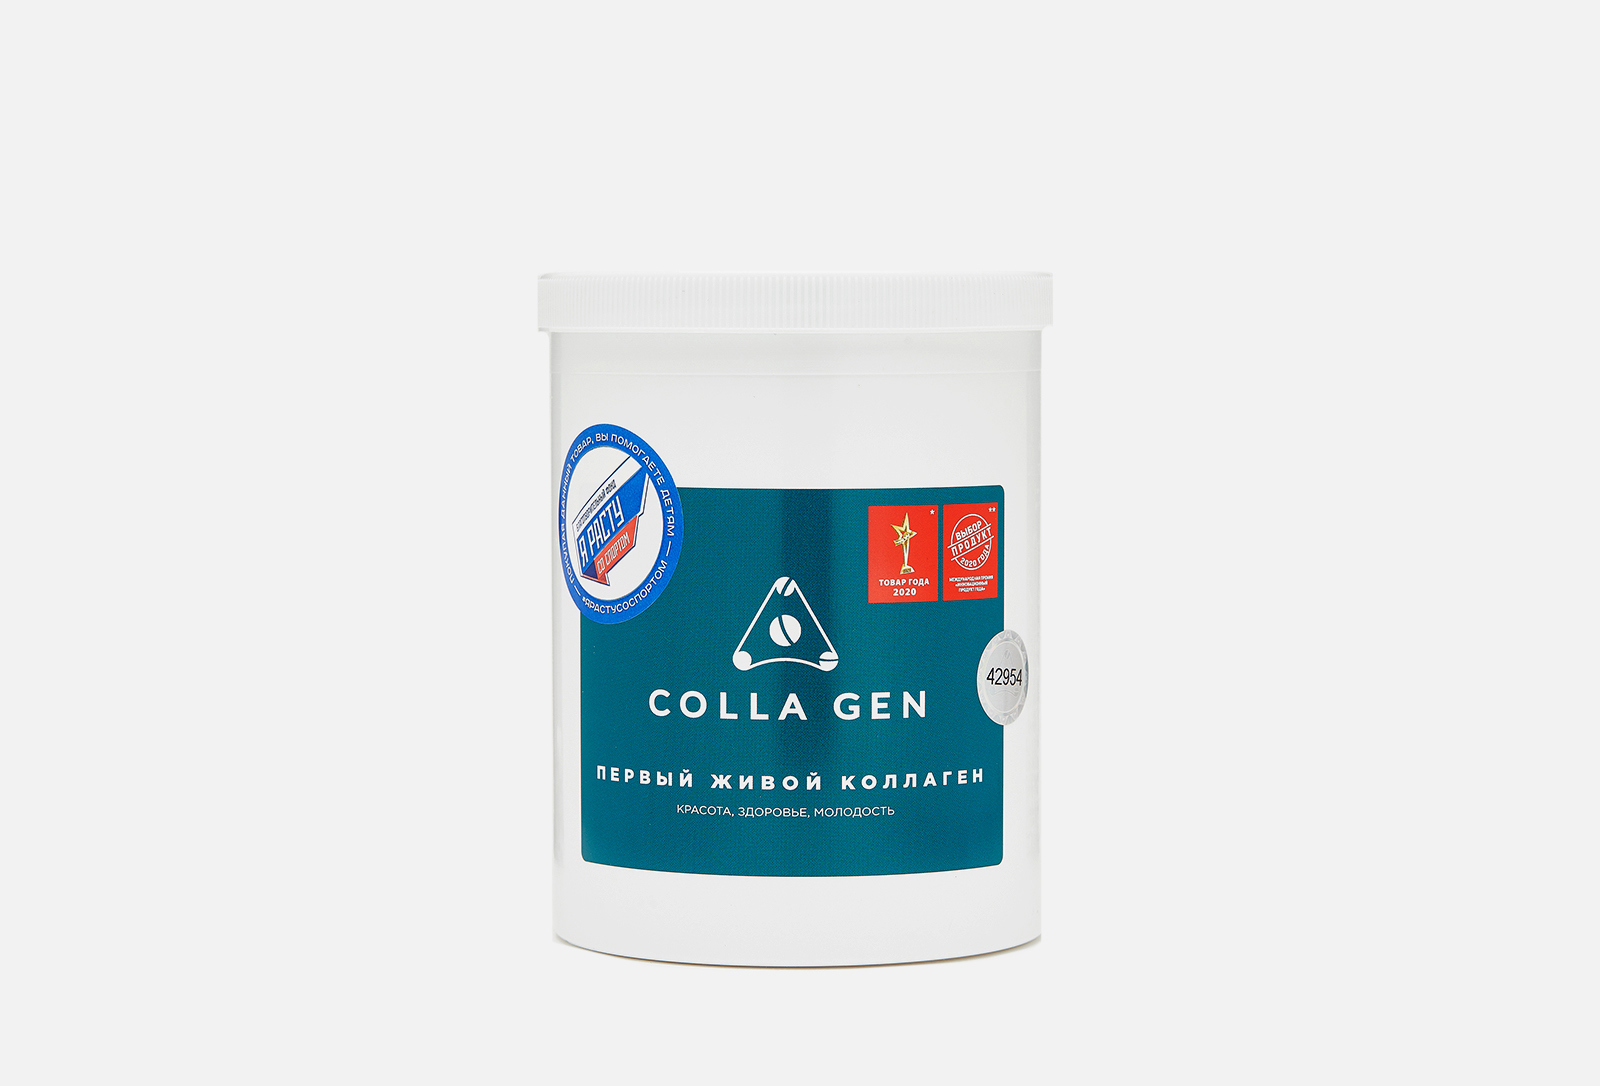 Живой коллаген skincareshop. Живой коллаген. Коллаген пищевой. "Colla Gen" - первый живой коллаген. Alive Collagen.